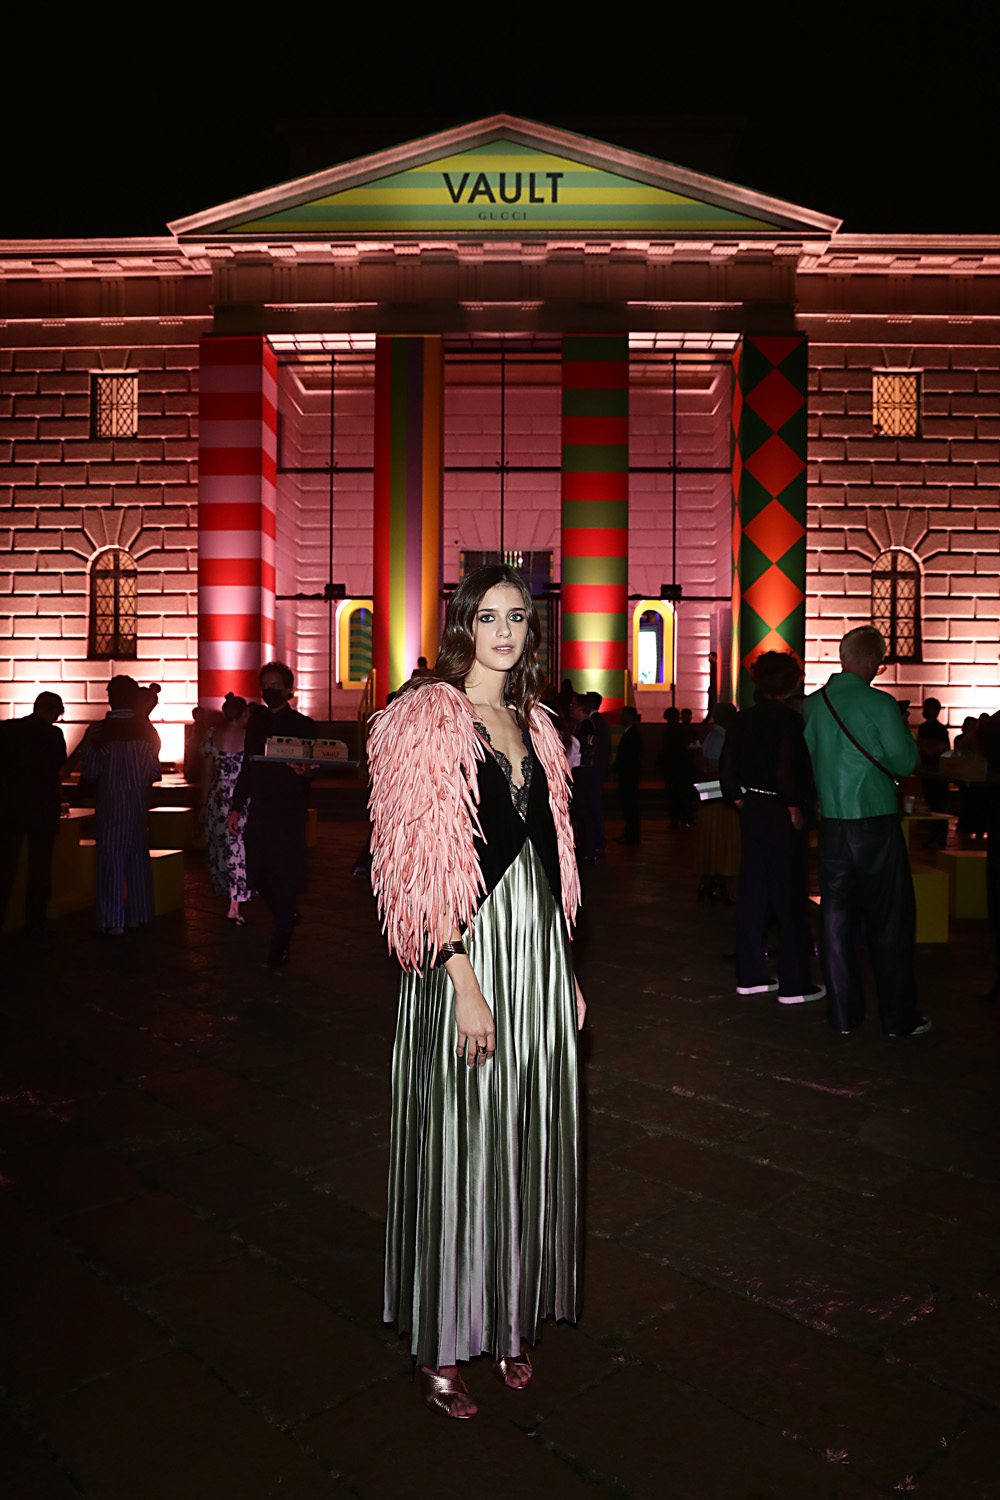 Benedetta Porcaroli  à la soirée Gucci Vault à Milan